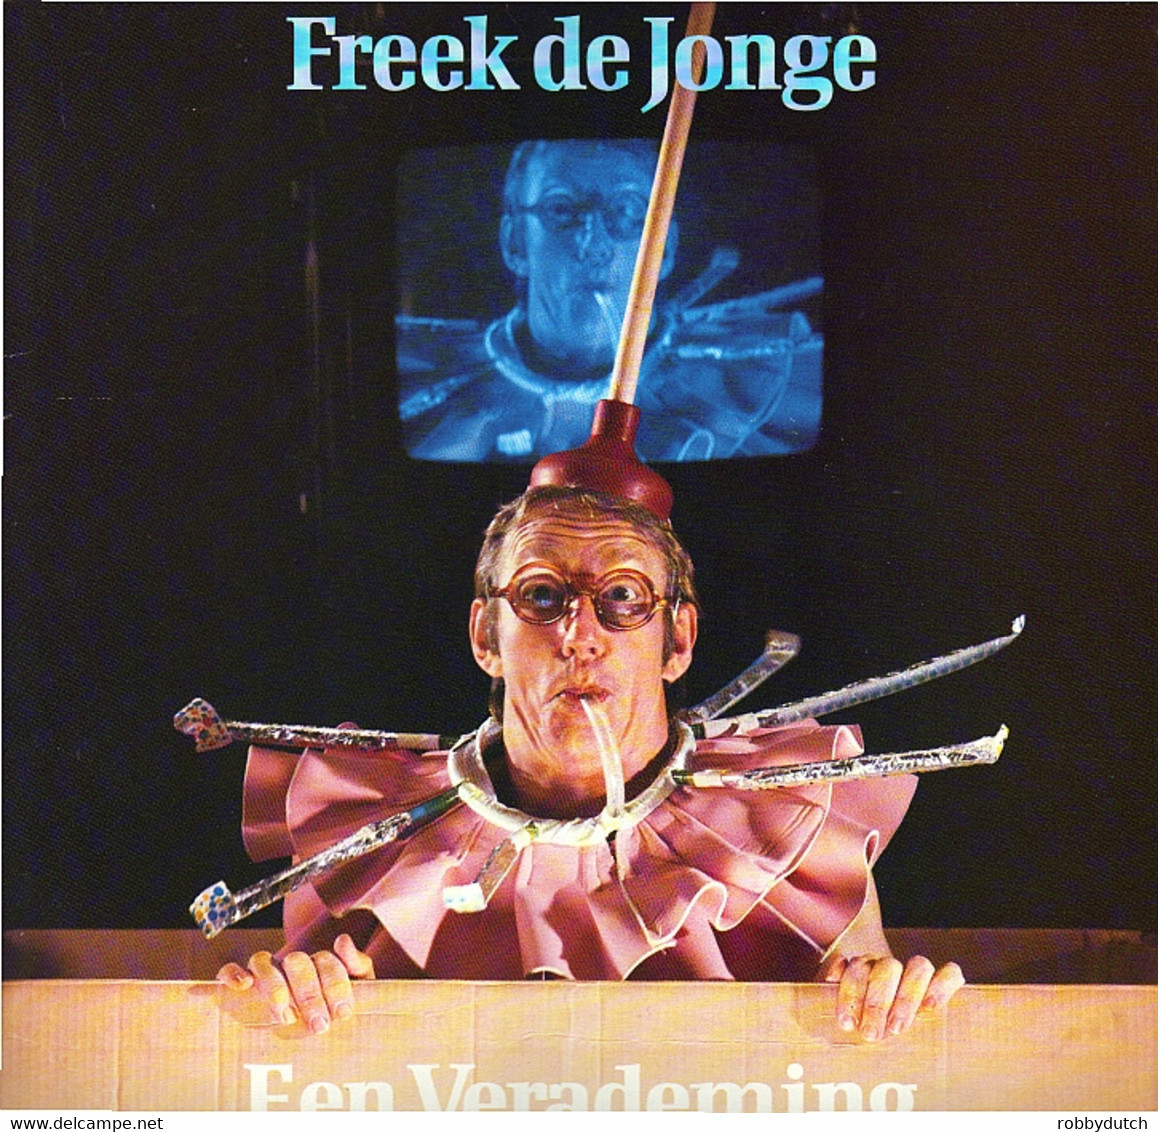 * LP *  FREEK DE JONGE - EEN VERADEMING (Holland 1984) - Cómica